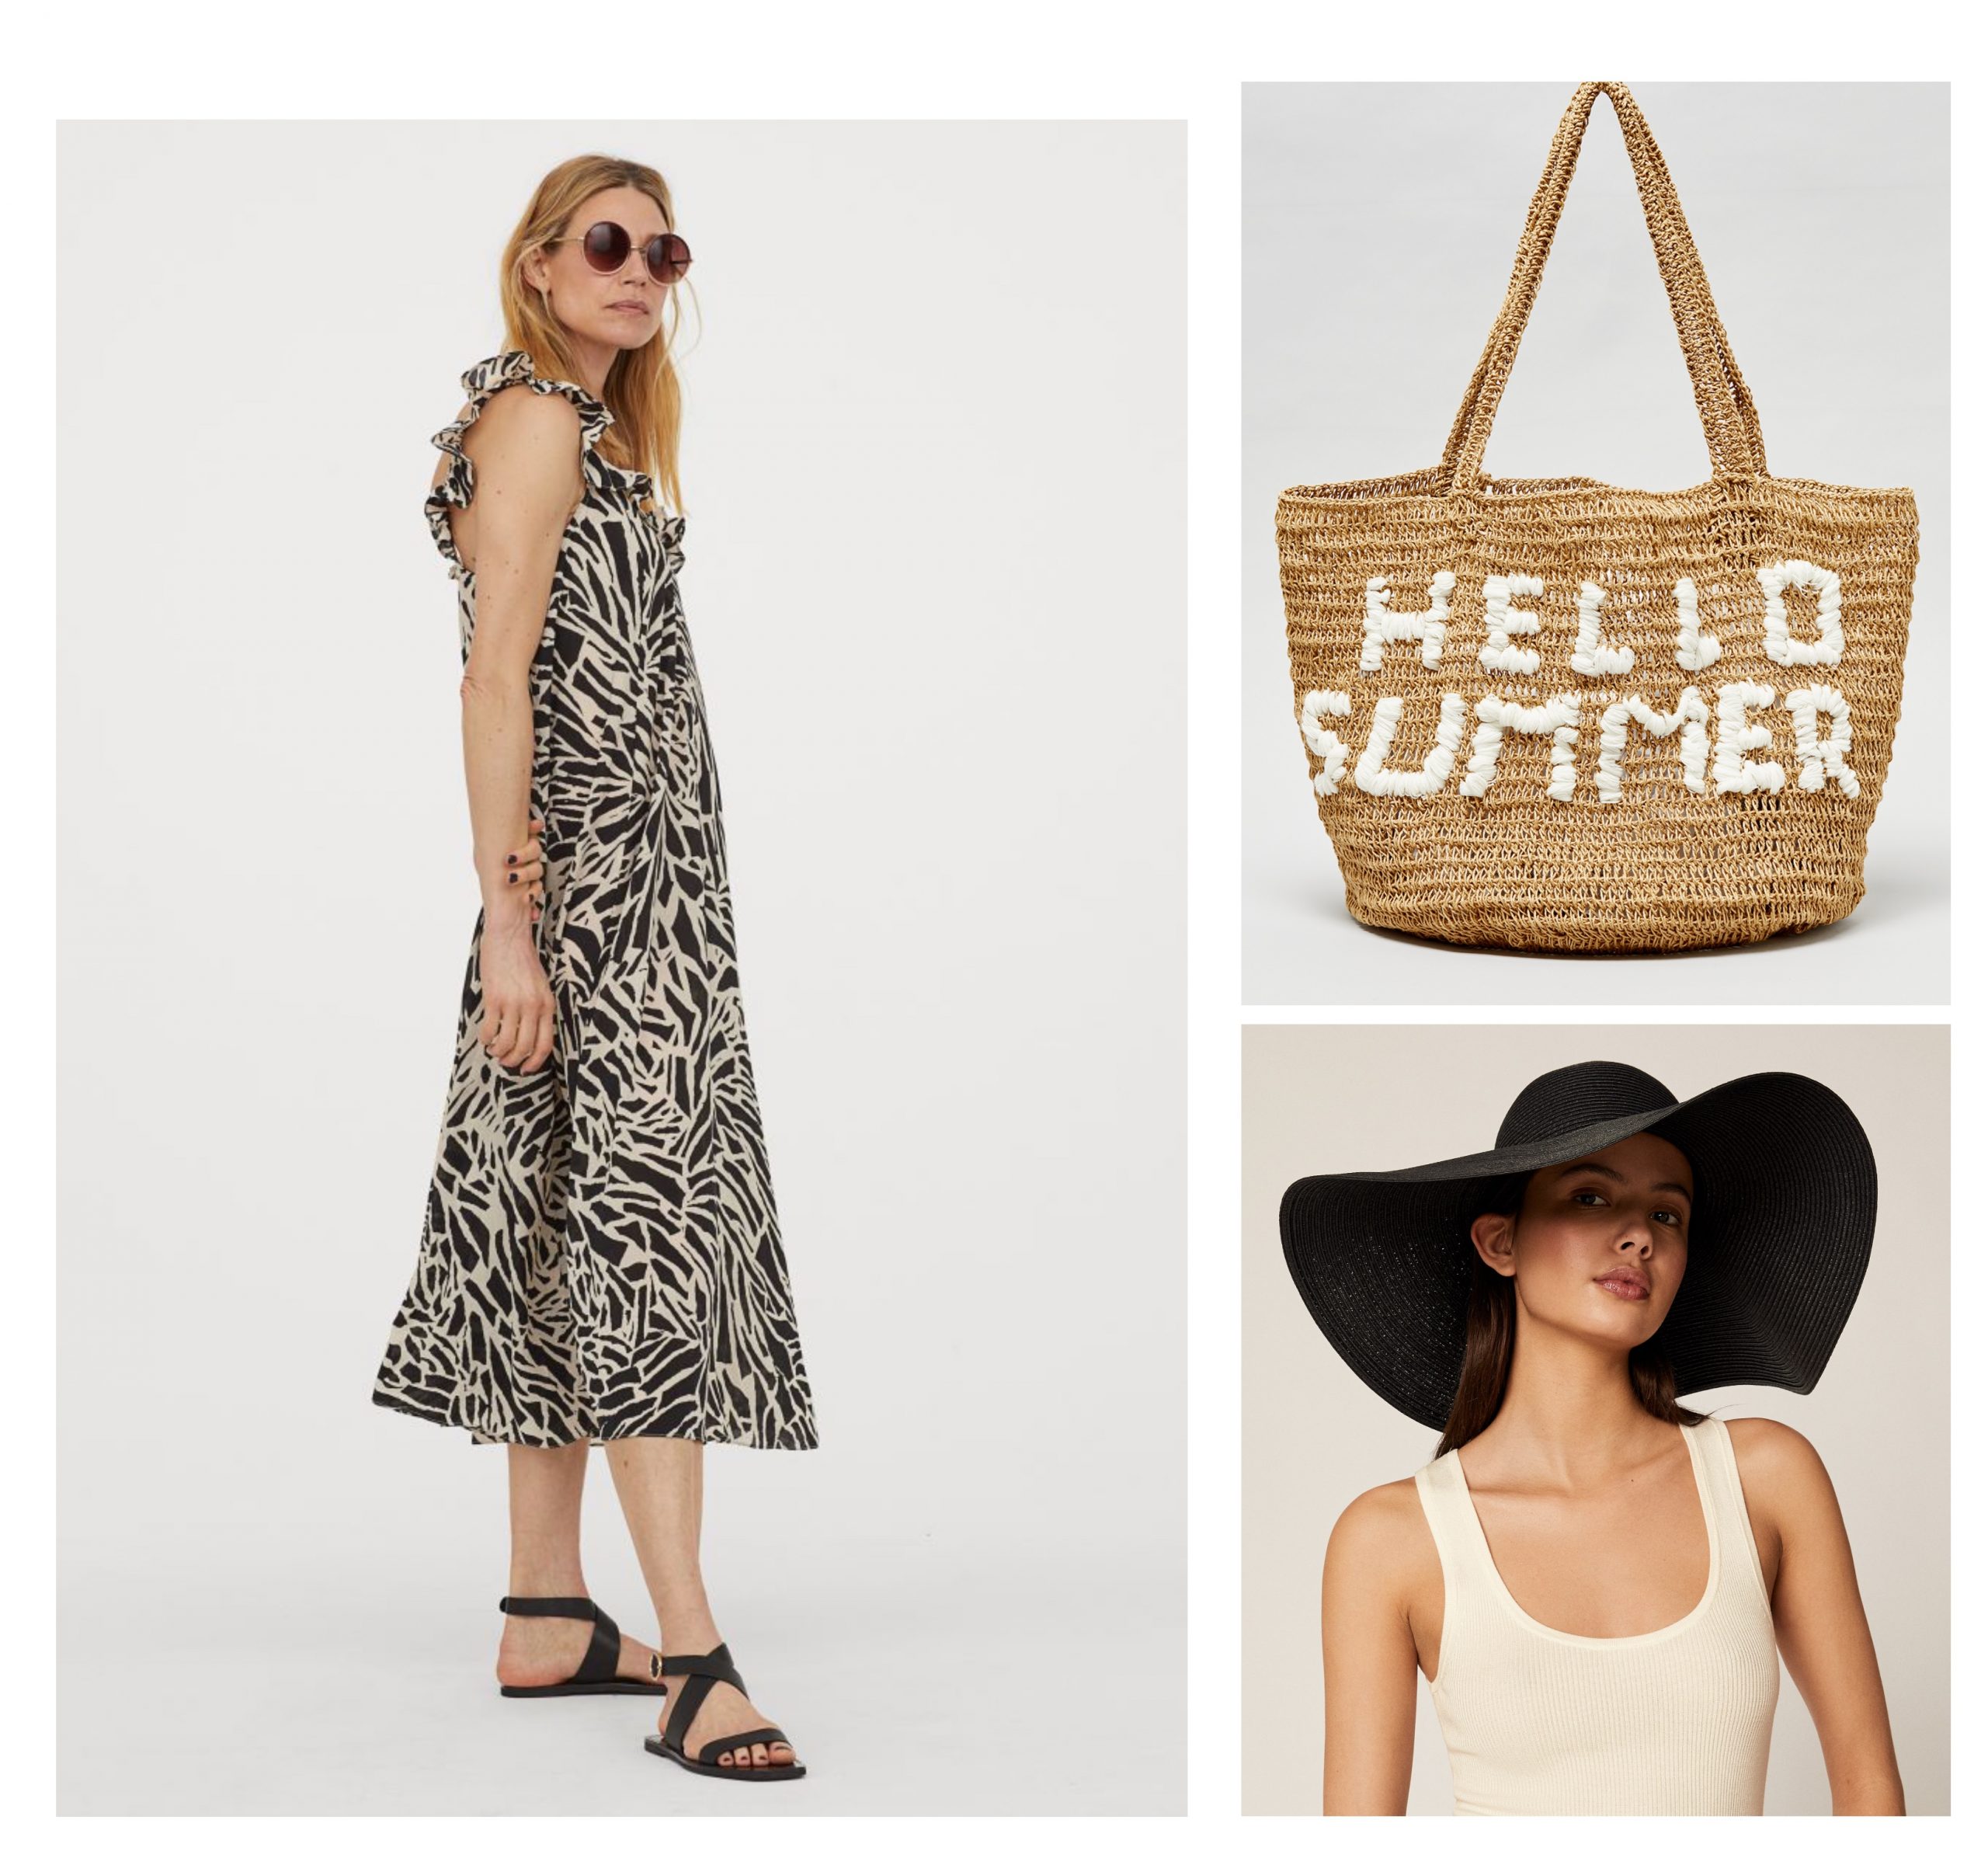 Conjunto para bajar a la playa formado por un vestido estampado de H&M, bolso de System Action grande con letras "Hello Summer" y una Pamela negra.